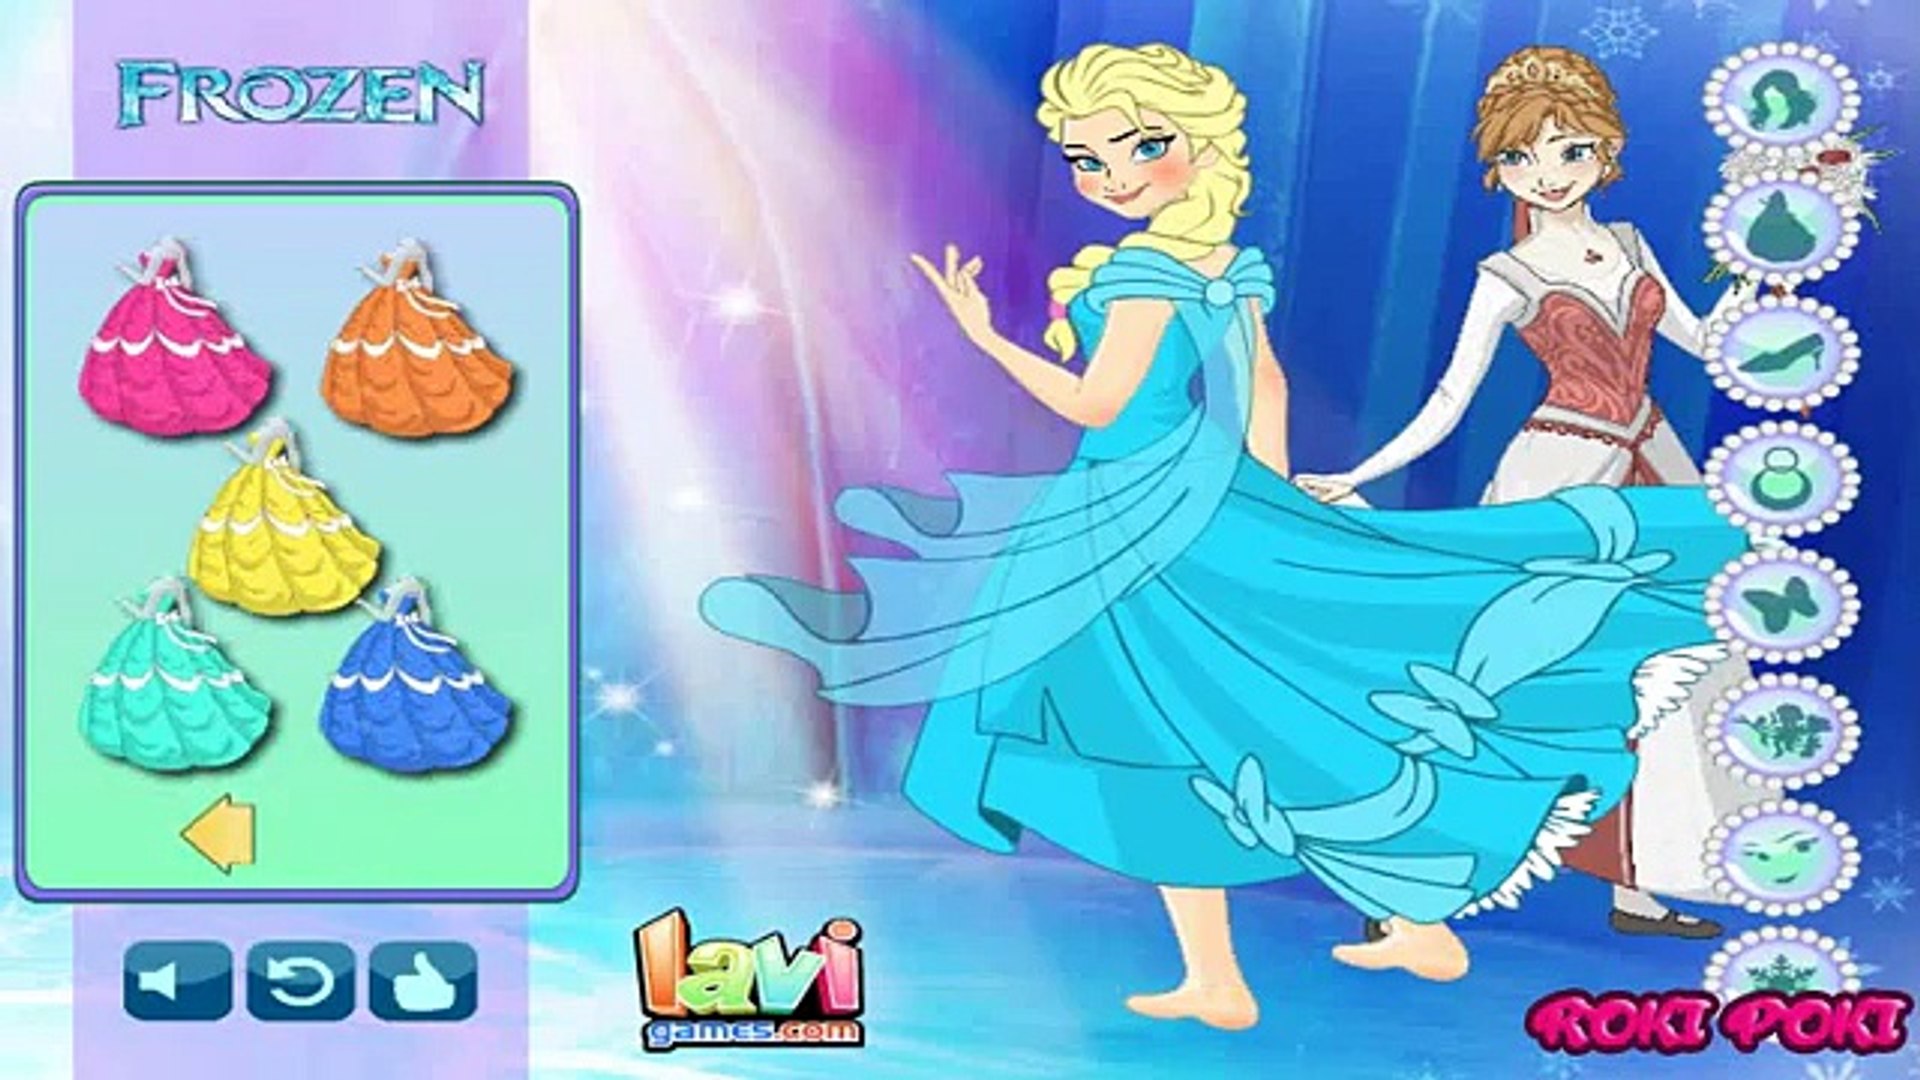 Recuento Bajo mandato aburrido Plastilina Frozen Elsa Princesa Vestido Plastilina Barbie Vestido de Fiesta  hasta Plastilina - Dailymotion Video